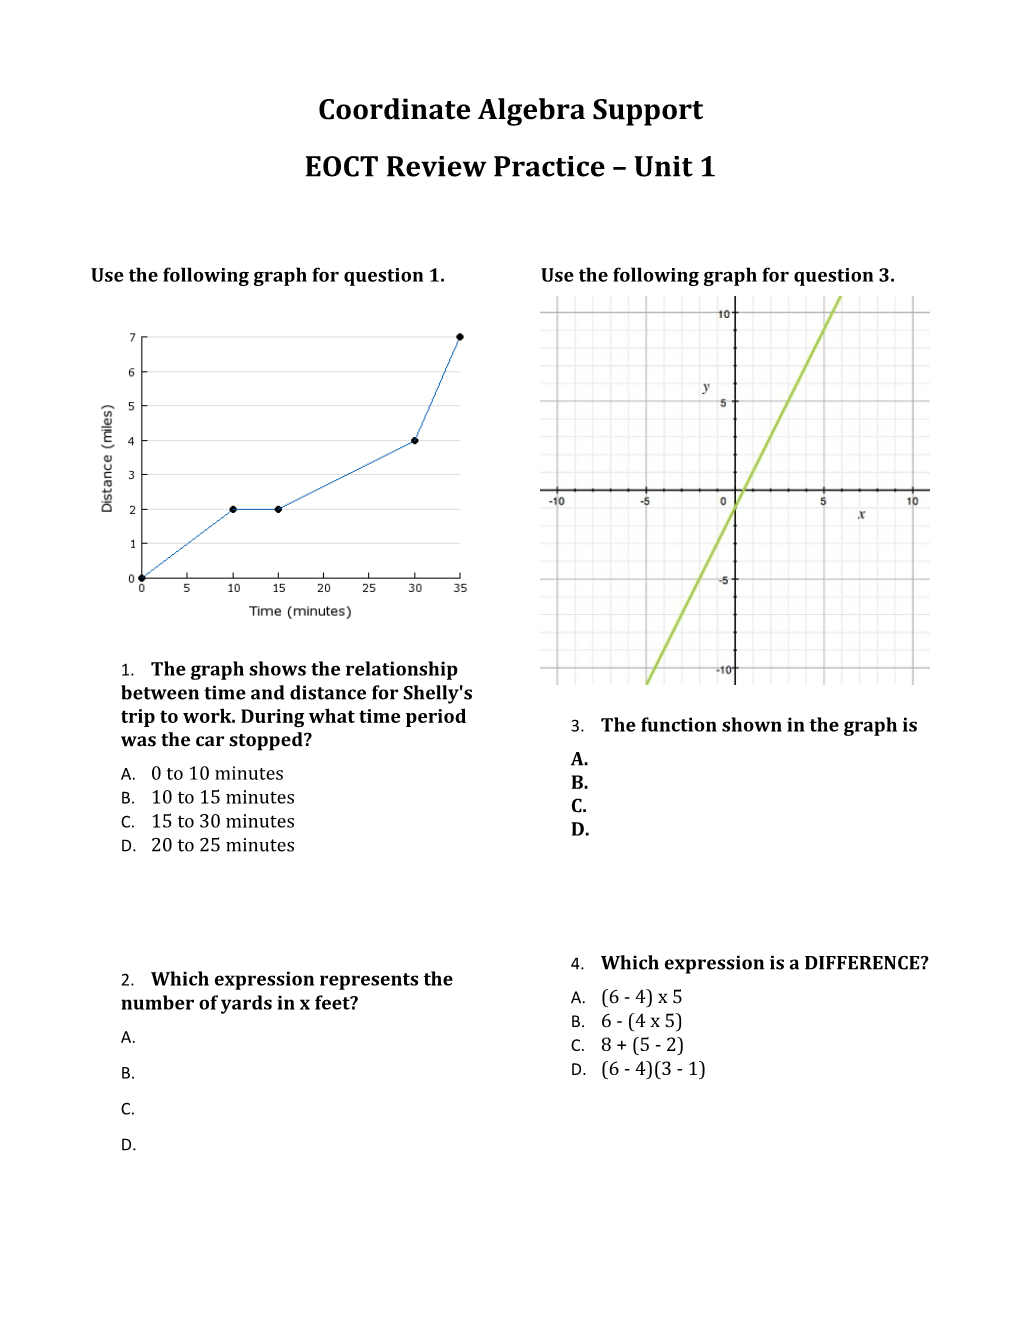 EOCT Review Practice Unit 1